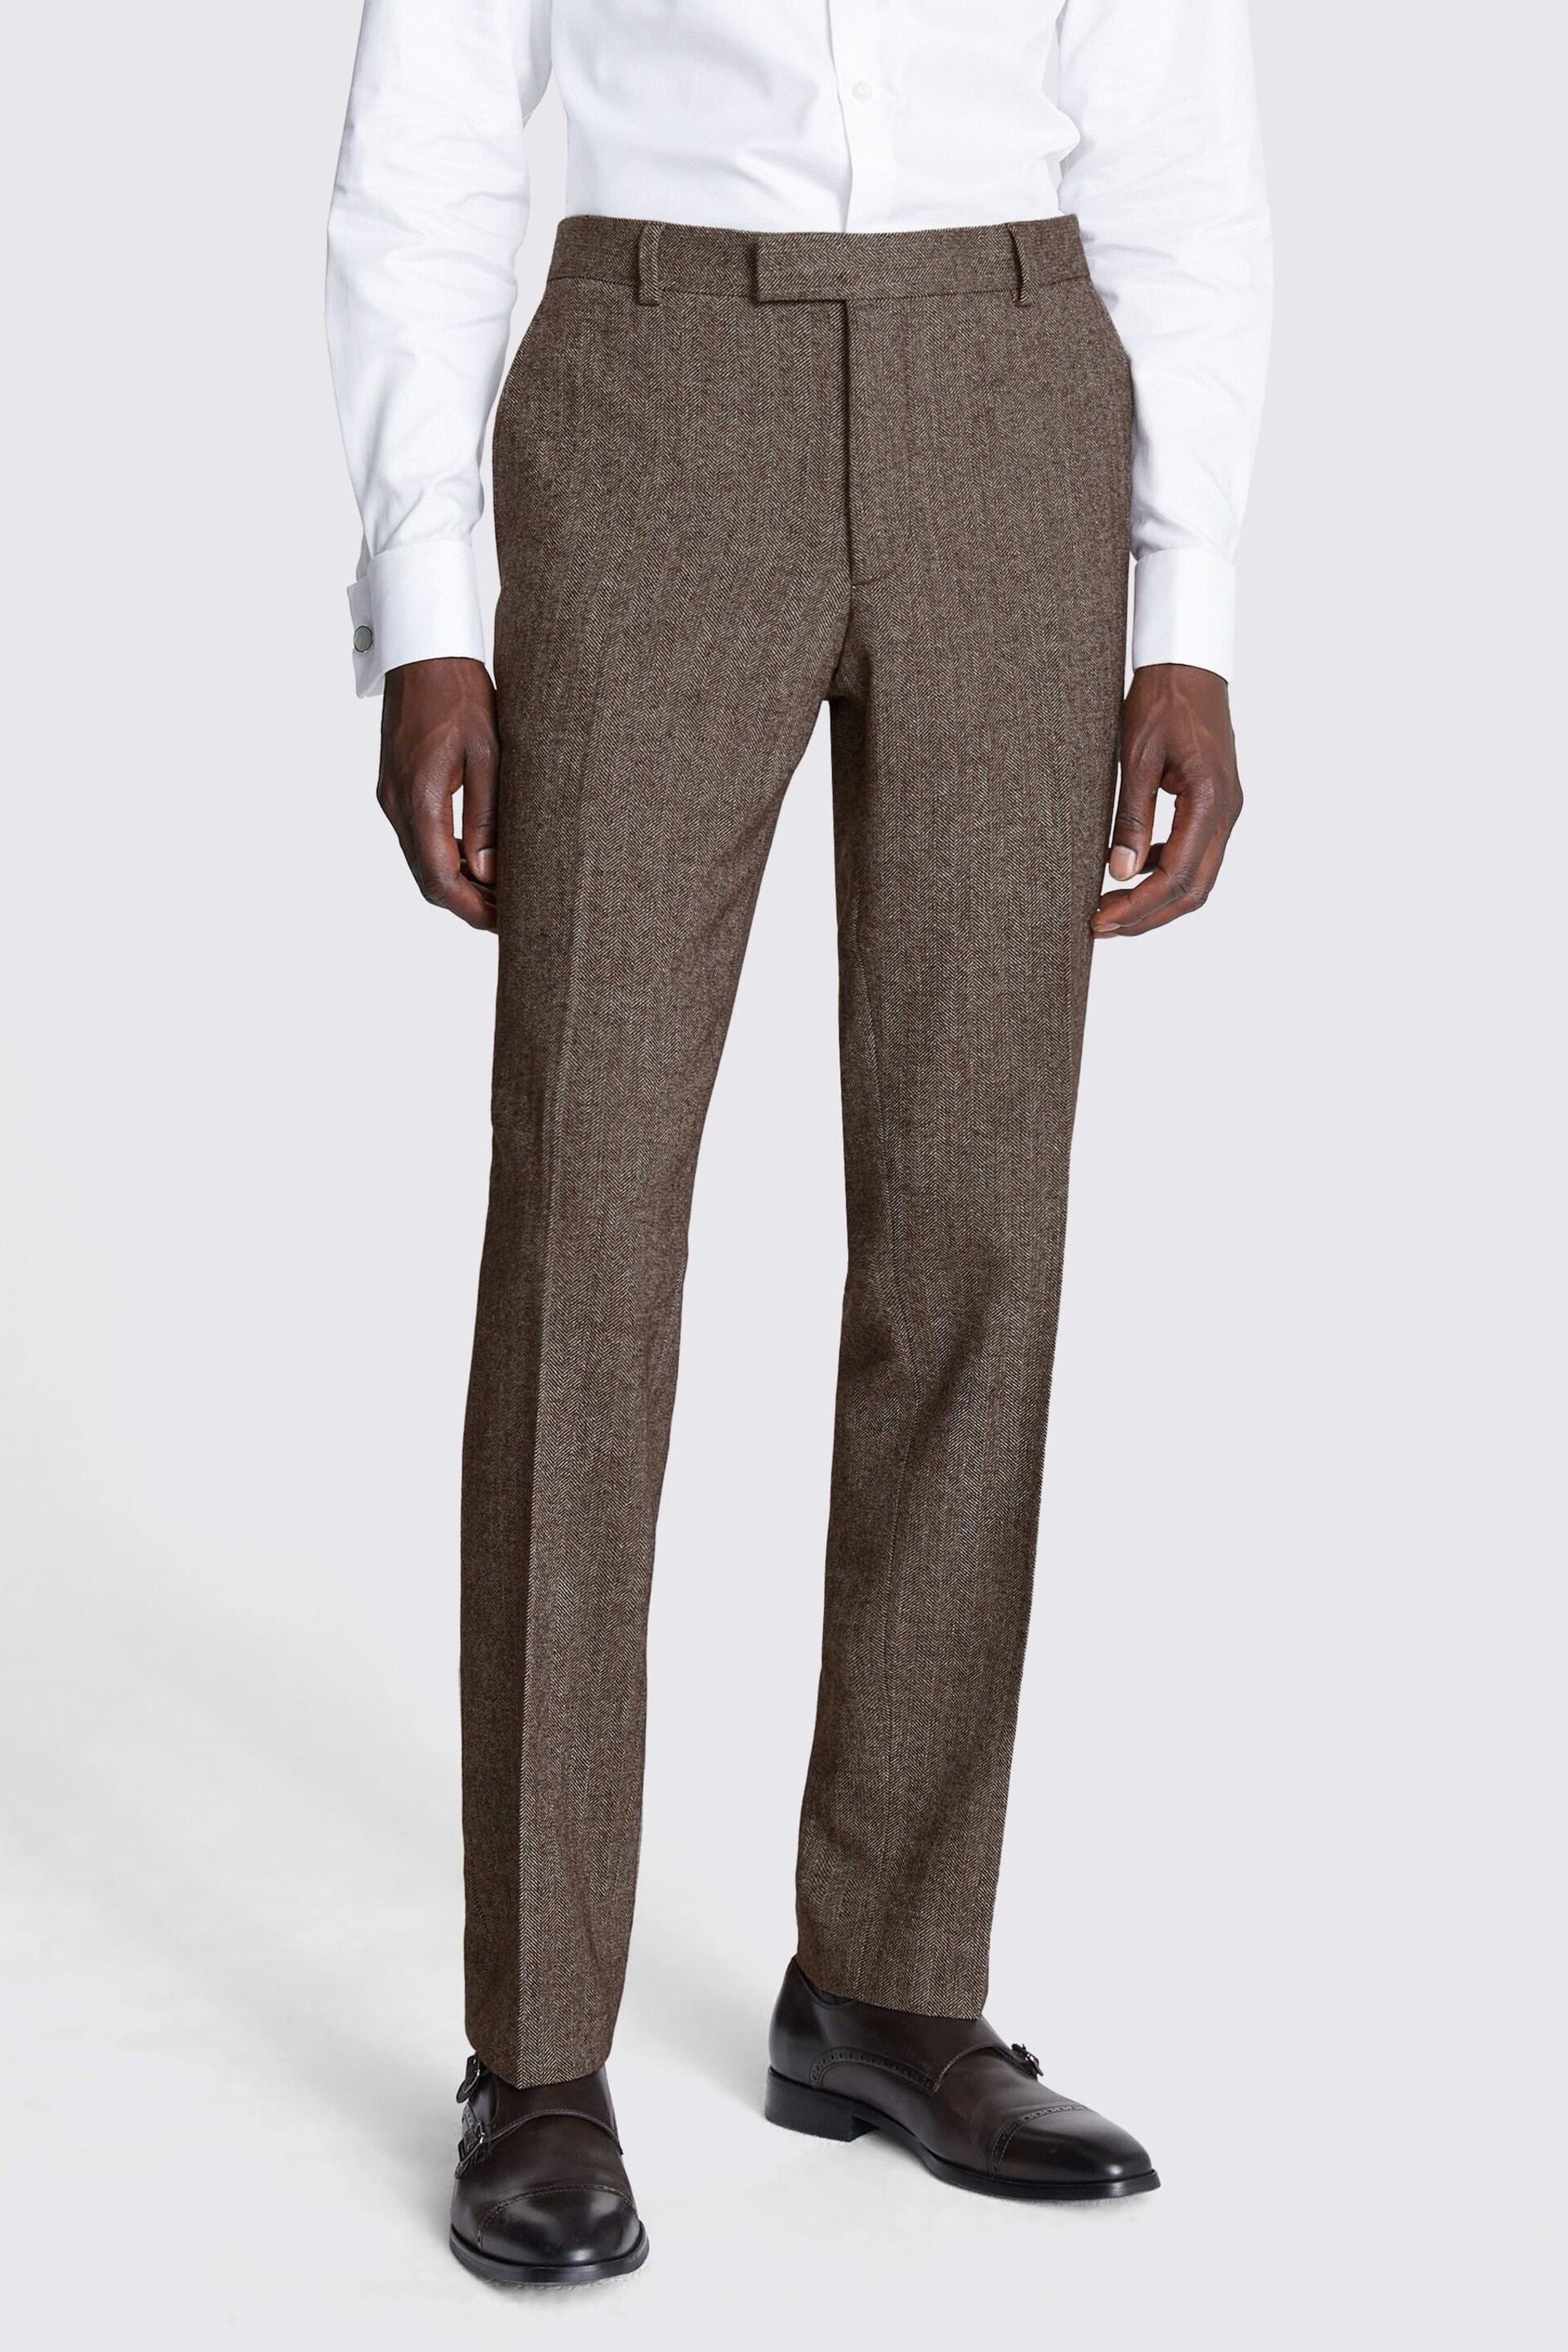 MOSS Slim Fit Brown Tweed Trousers - Image 1 of 3